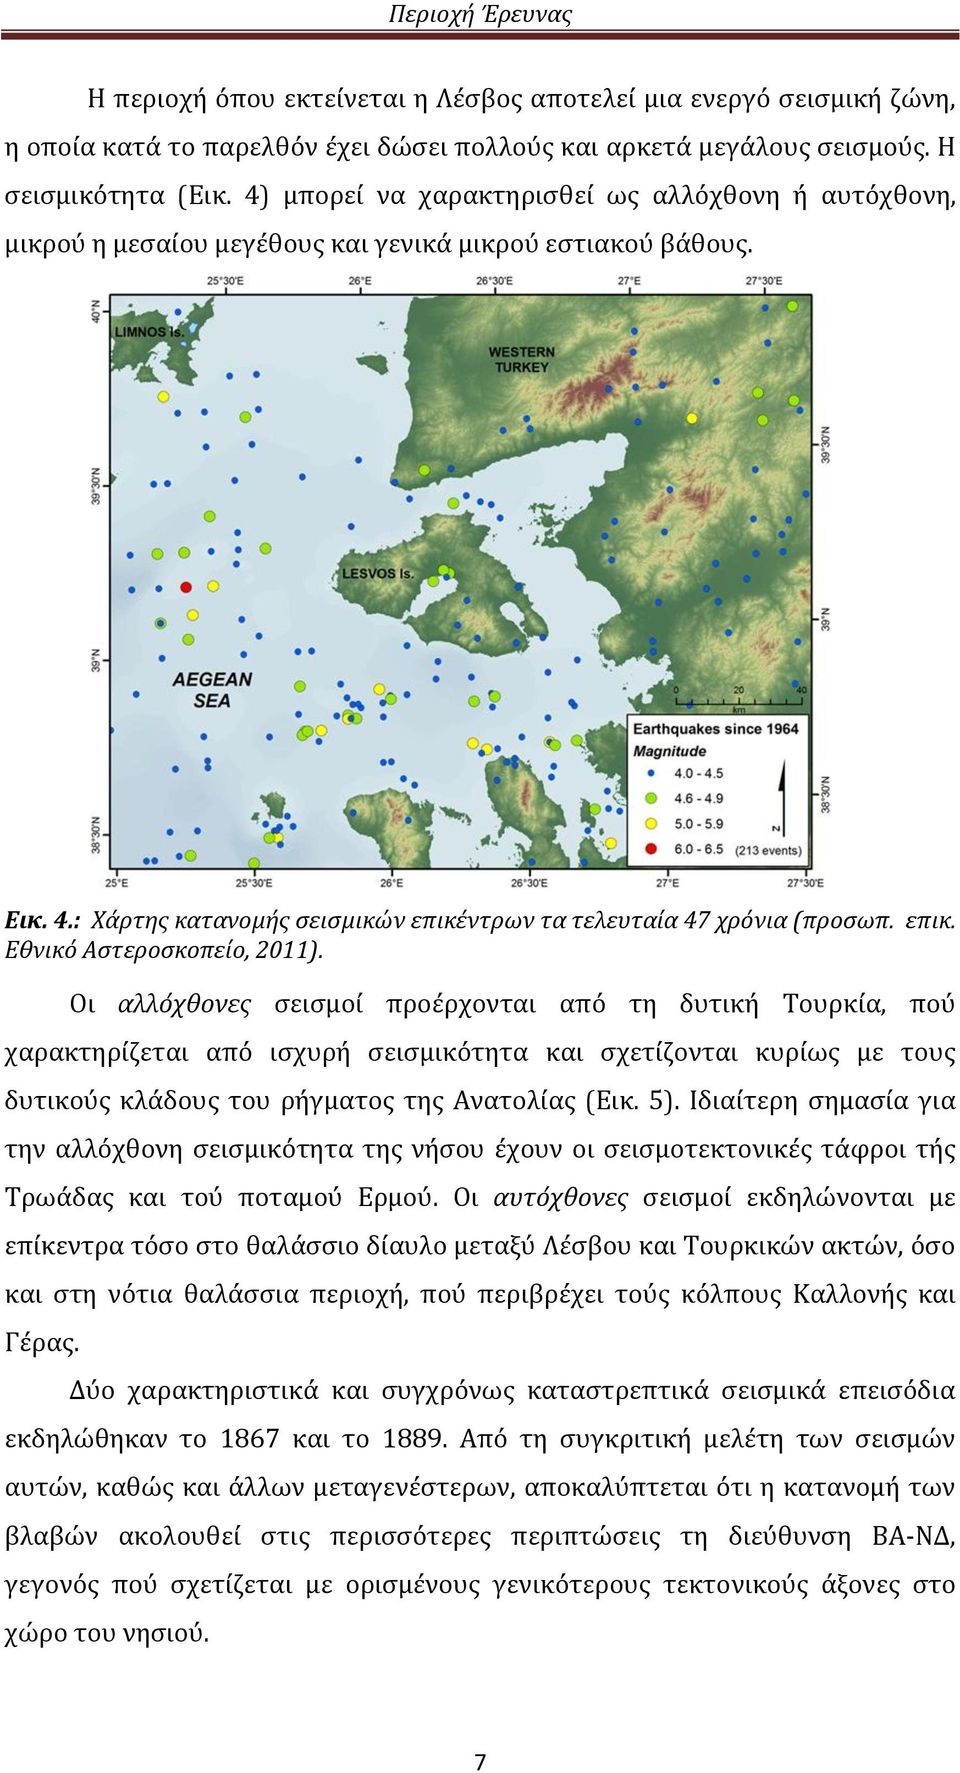 Οι αλλόχθονες σεισμοί προέρχονται από τη δυτική Τουρκία, πού χαρακτηρίζεται από ισχυρή σεισμικότητα και σχετίζονται κυρίως με τους δυτικούς κλάδους του ρήγματος της Ανατολίας (Εικ. 5).